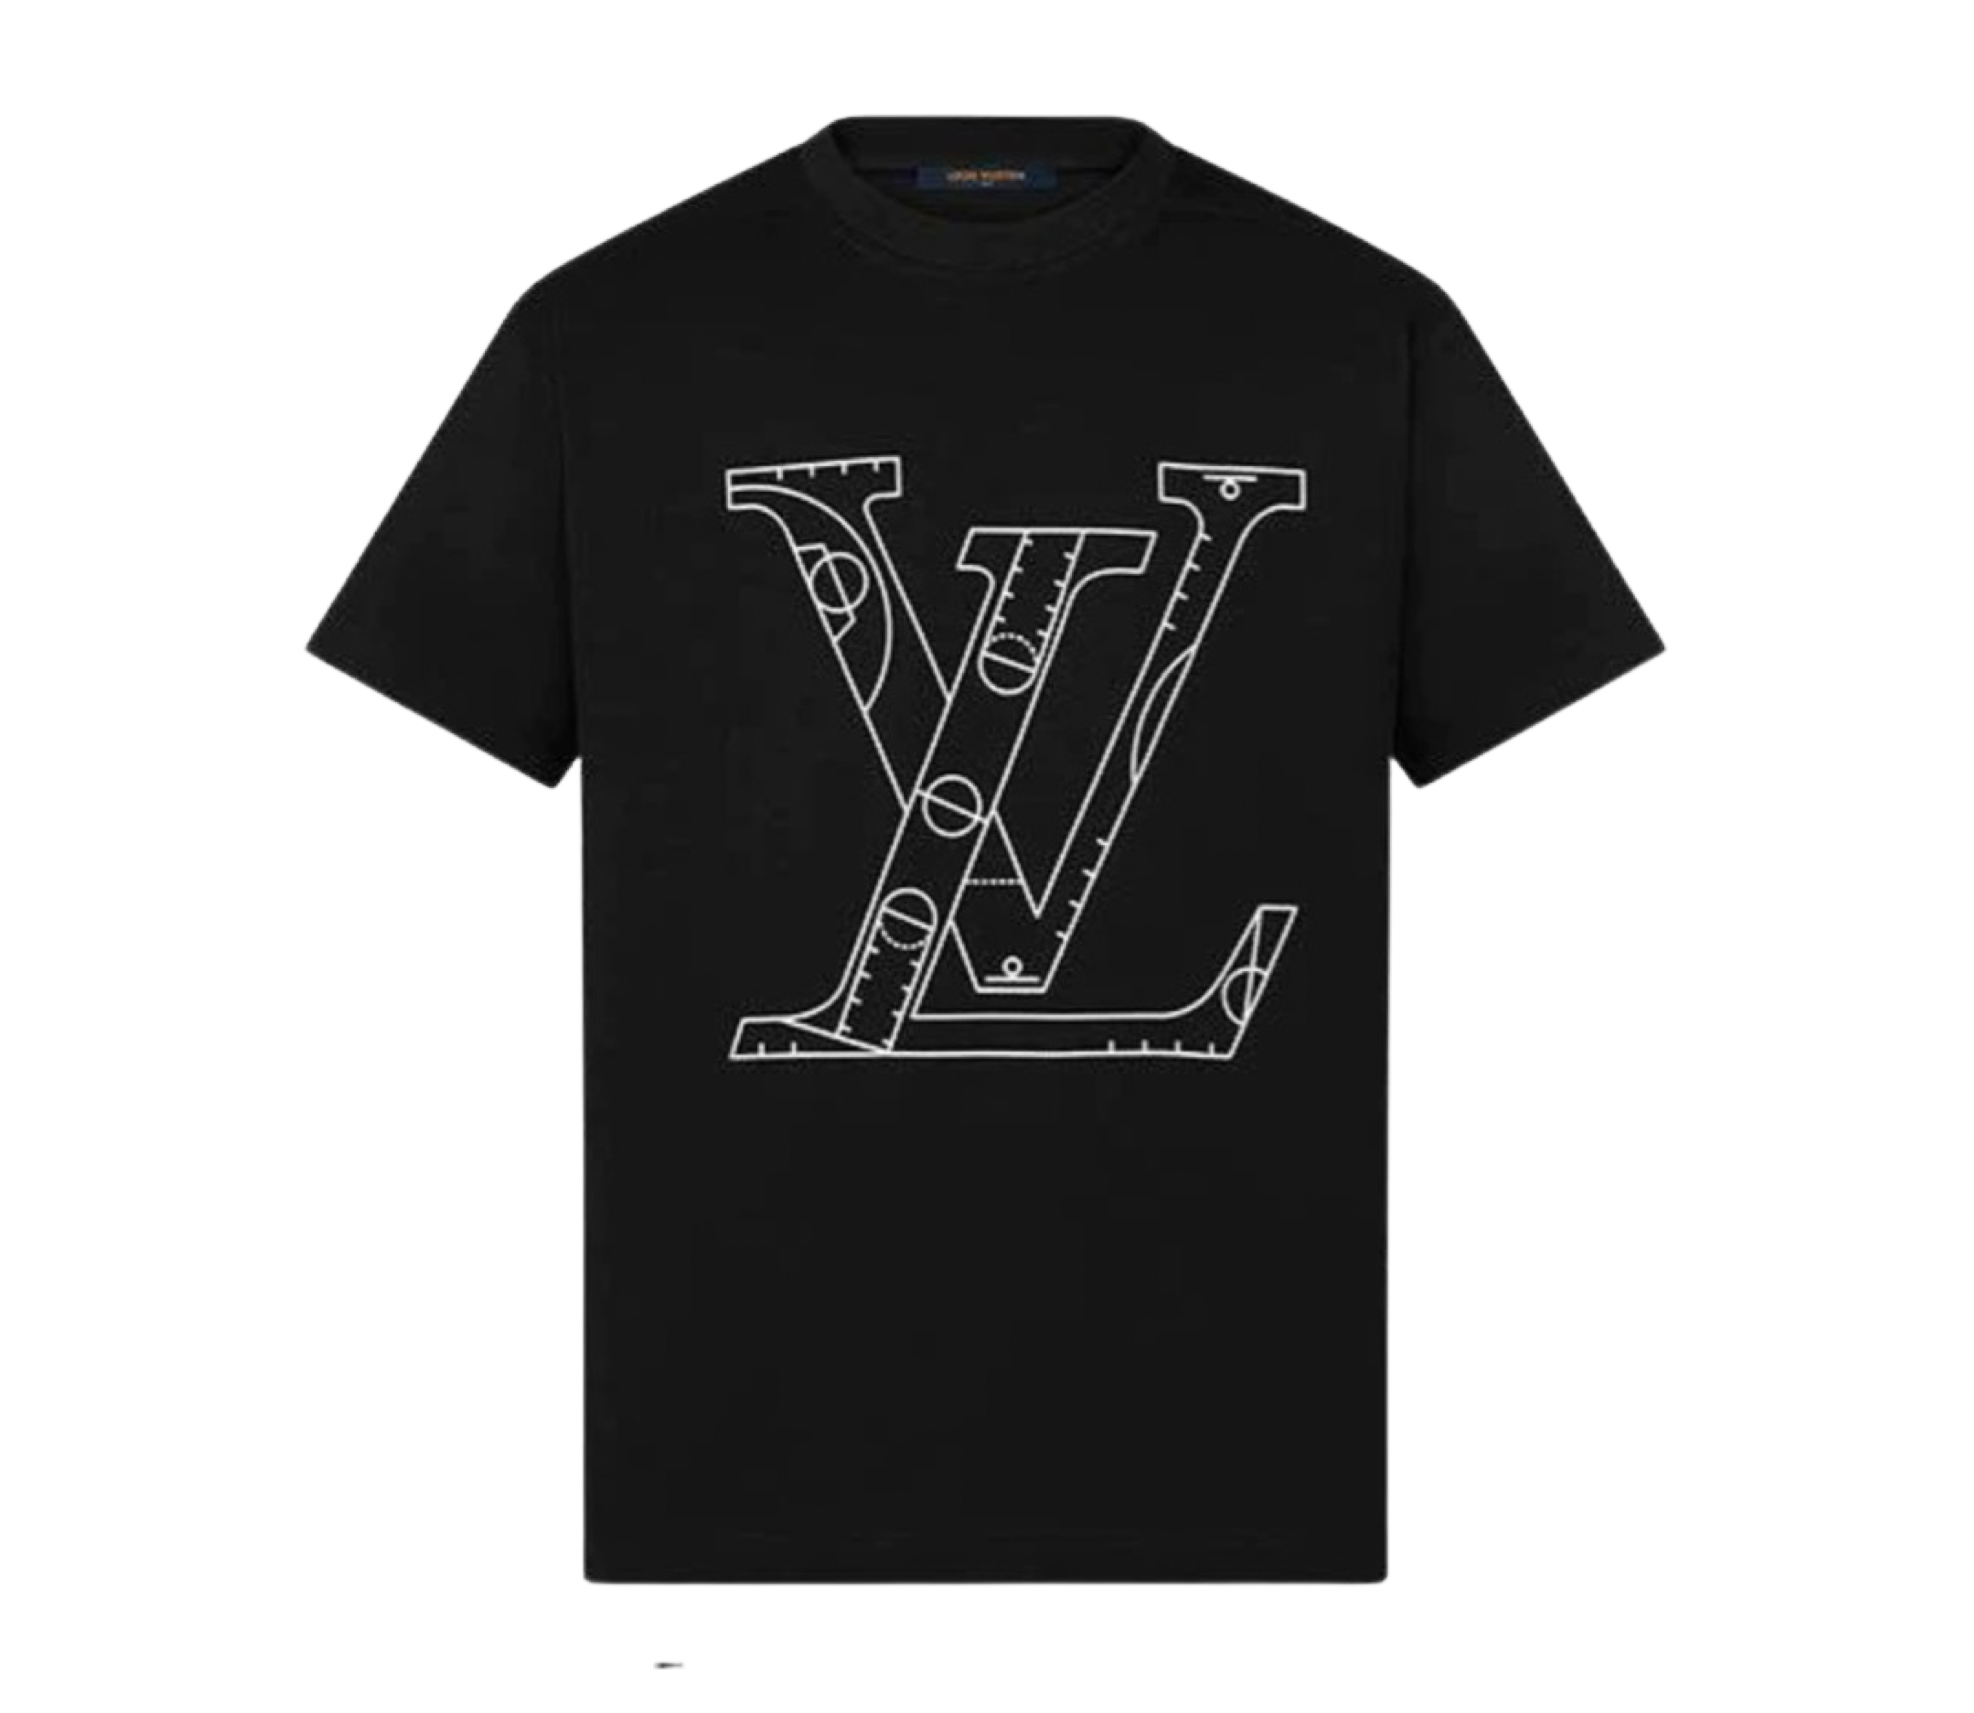 Louis Vuitton NBA t-shirt Virgil Abloh – 2ndChanceArchive